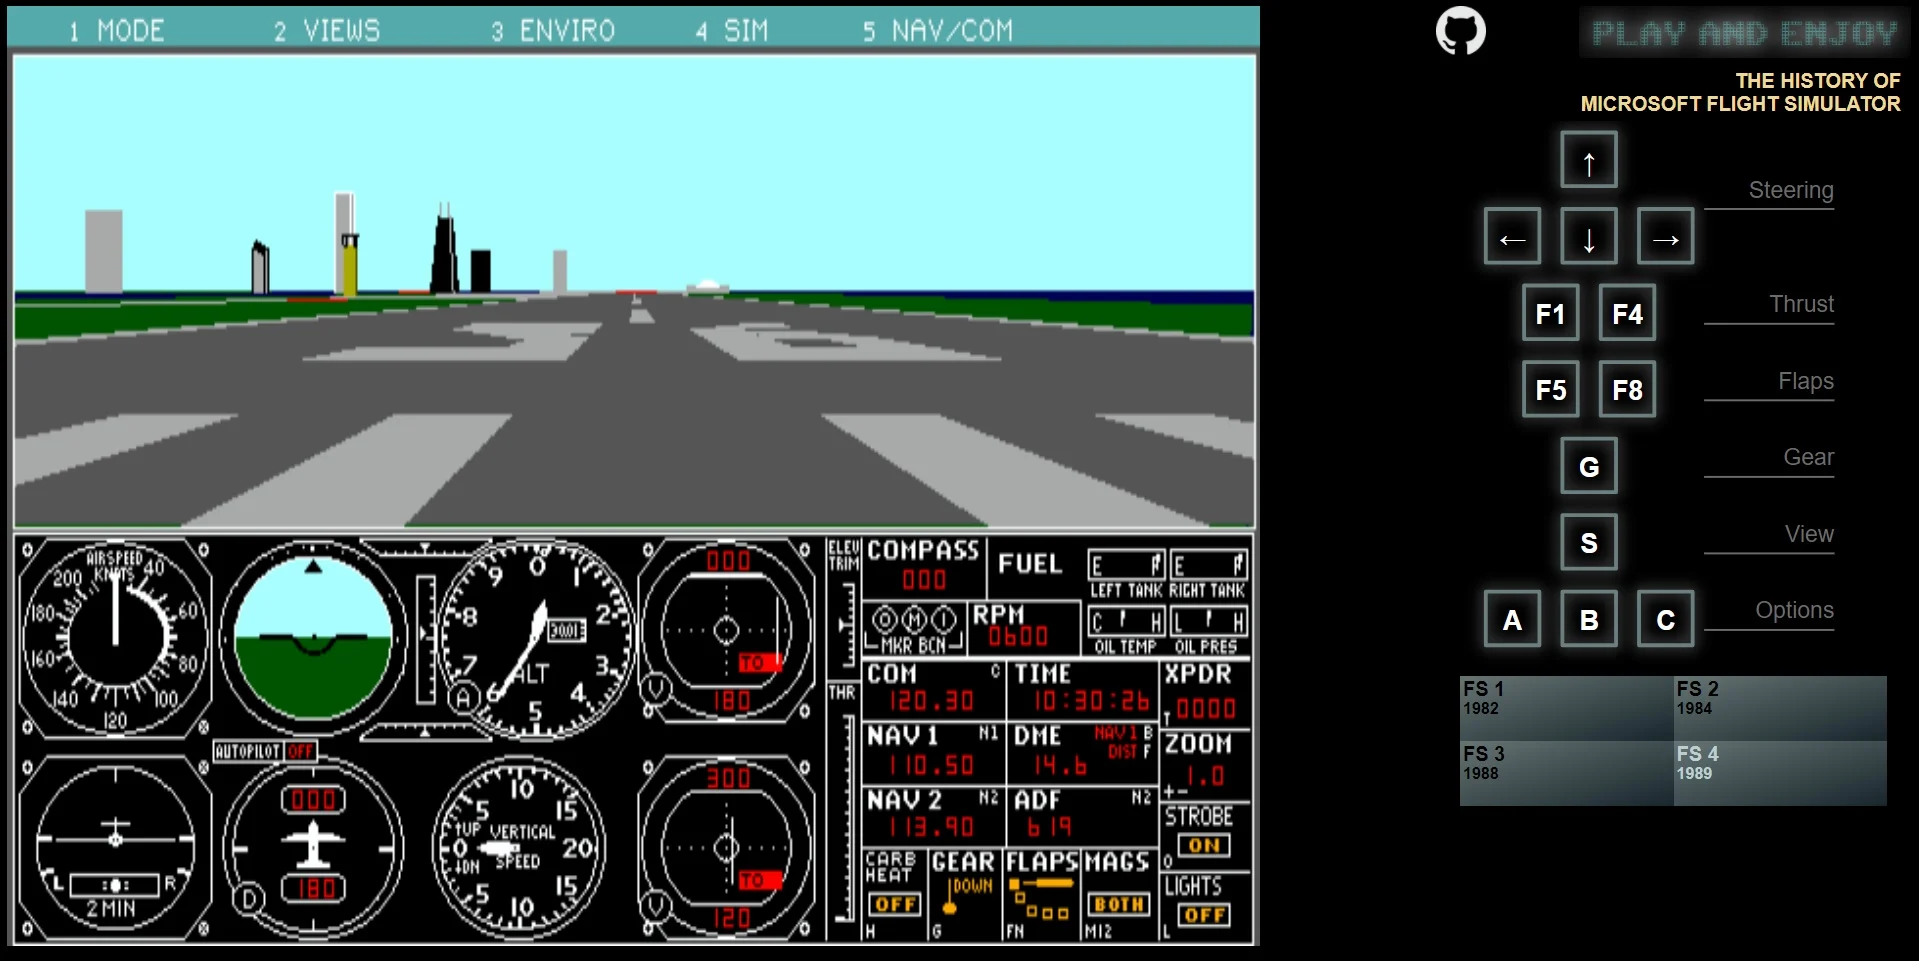  Microsoft Flight Simulator 1982 Tarayıcı İle Oynanabilir Hale Geldi !